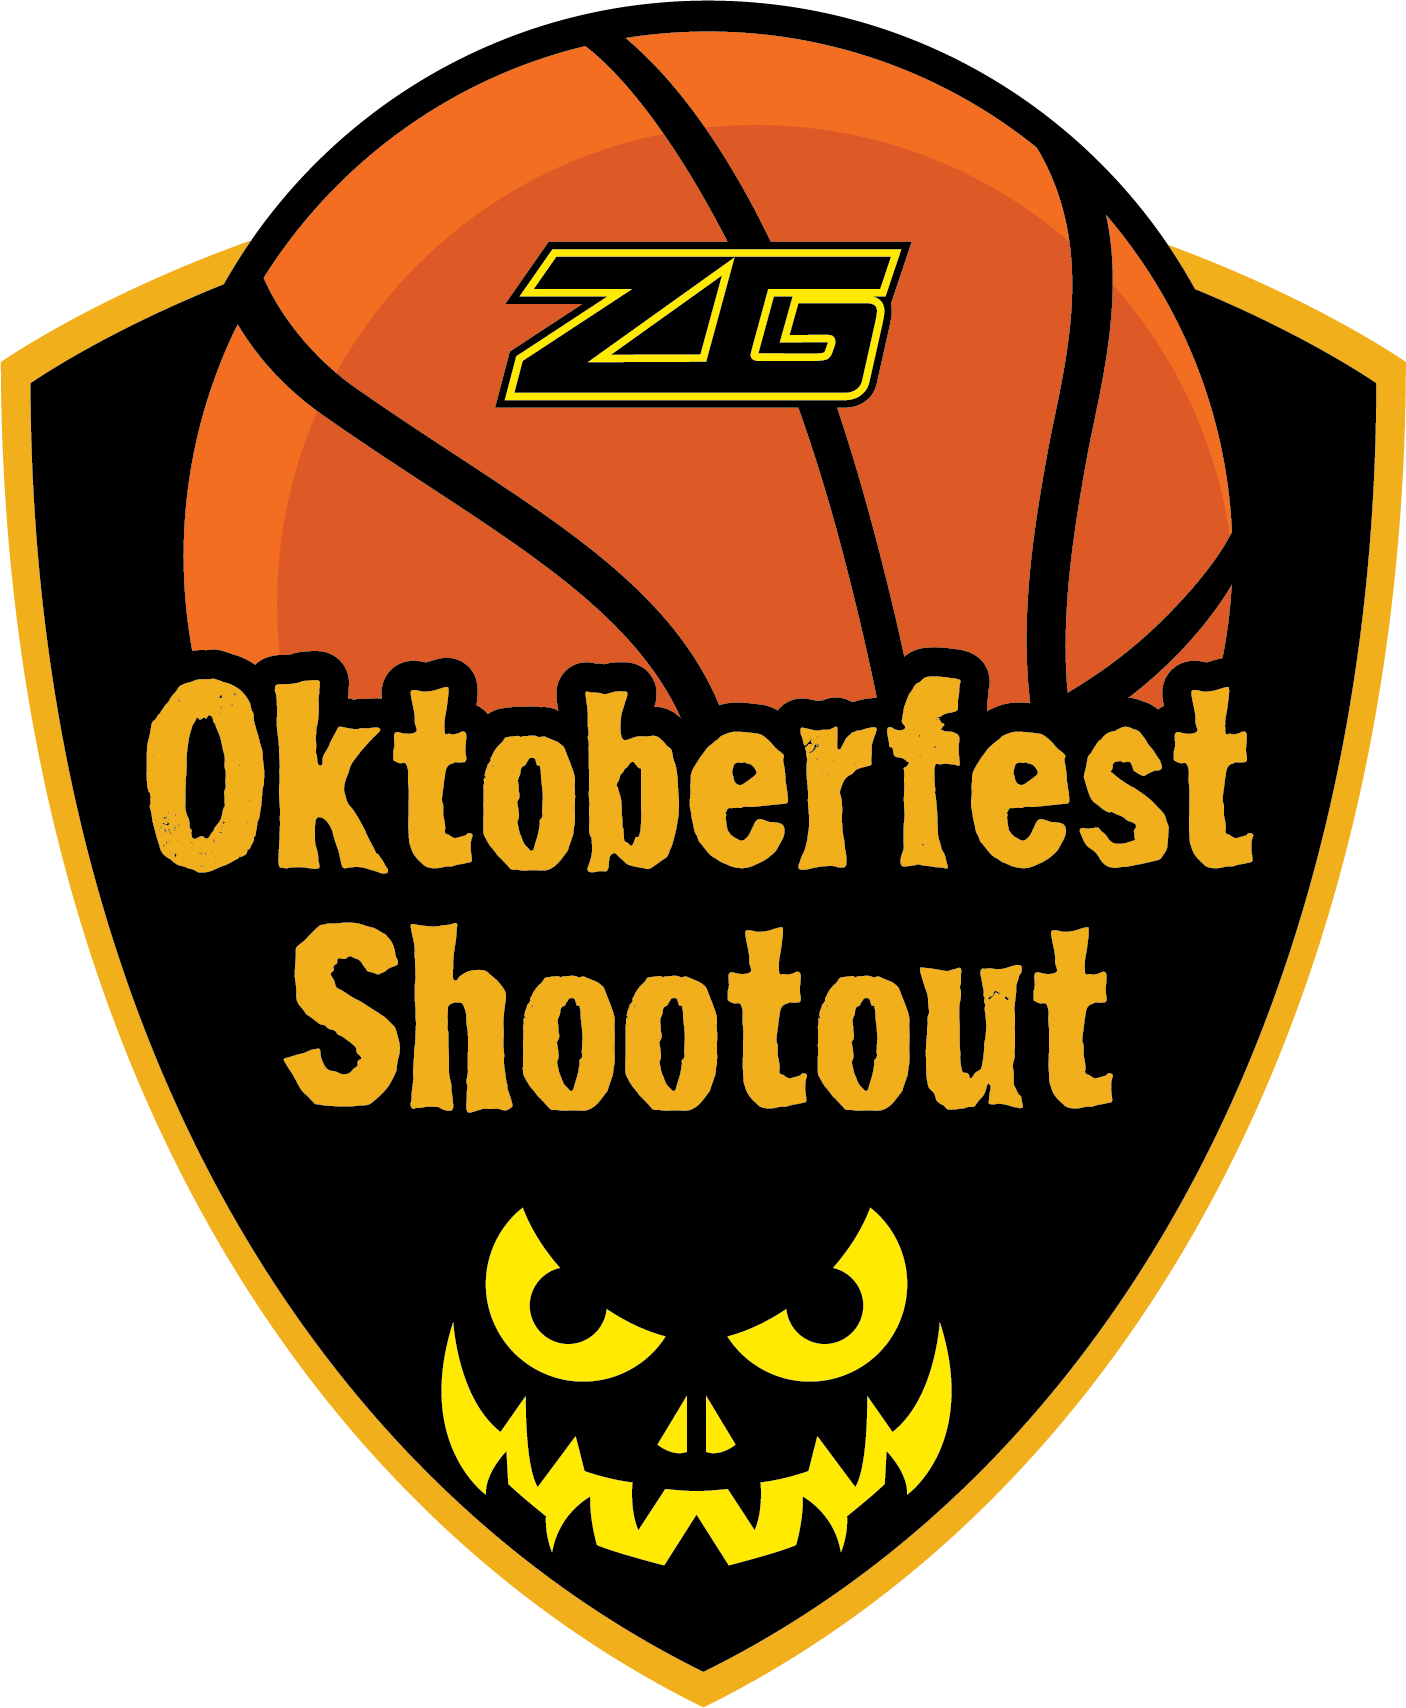 Oktoberfest Shootout